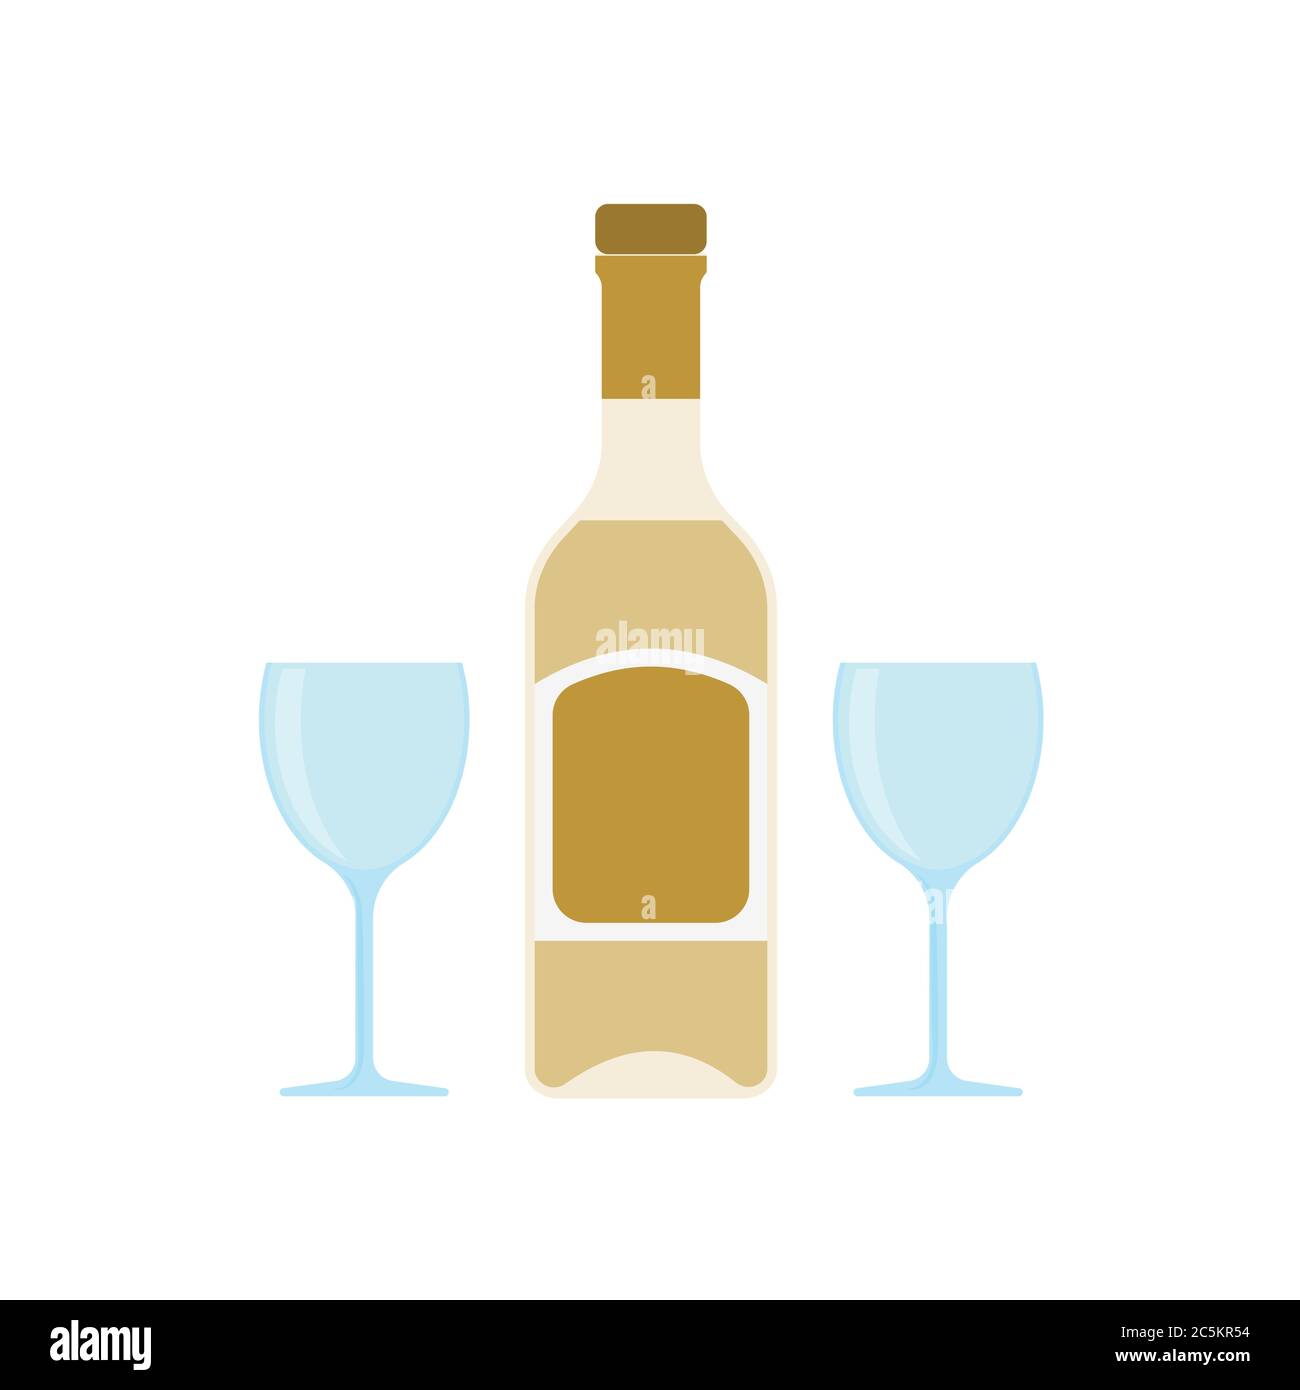 https://c8.alamy.com/comp/2C5KR54/alcohol-bottle-and-glasses-on-white-background-vector-illustration-in-trendy-flat-style-eps-10-2C5KR54.jpg